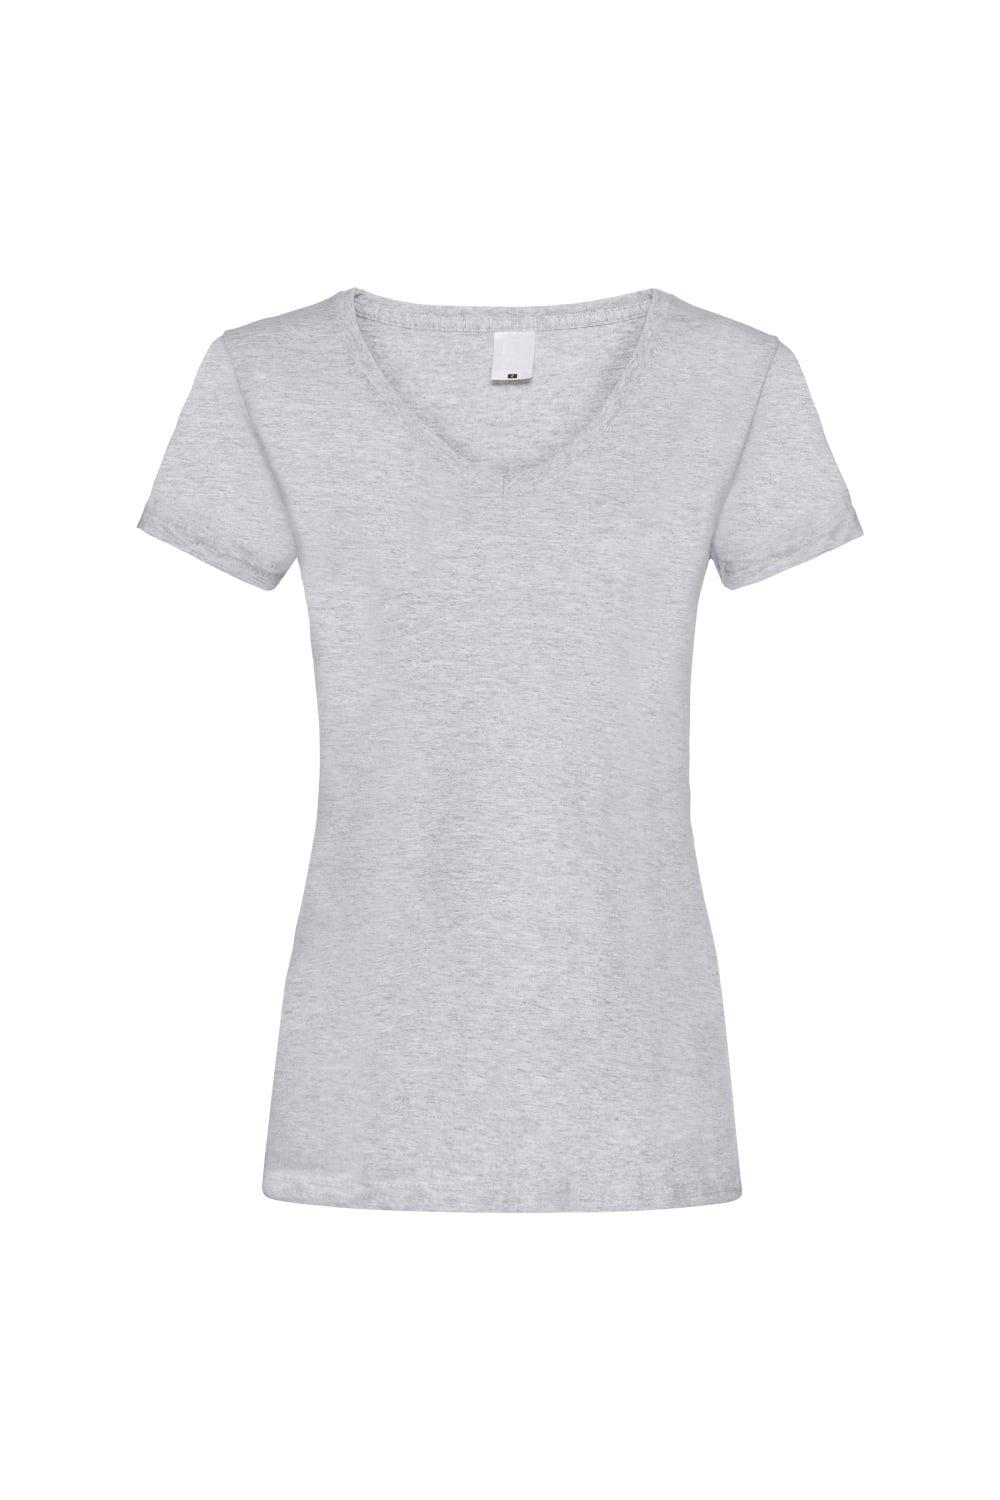 Повседневная футболка Value с V-образным вырезом и короткими рукавами Universal Textiles, серый футболка cacharel v образный вырез размер l серый